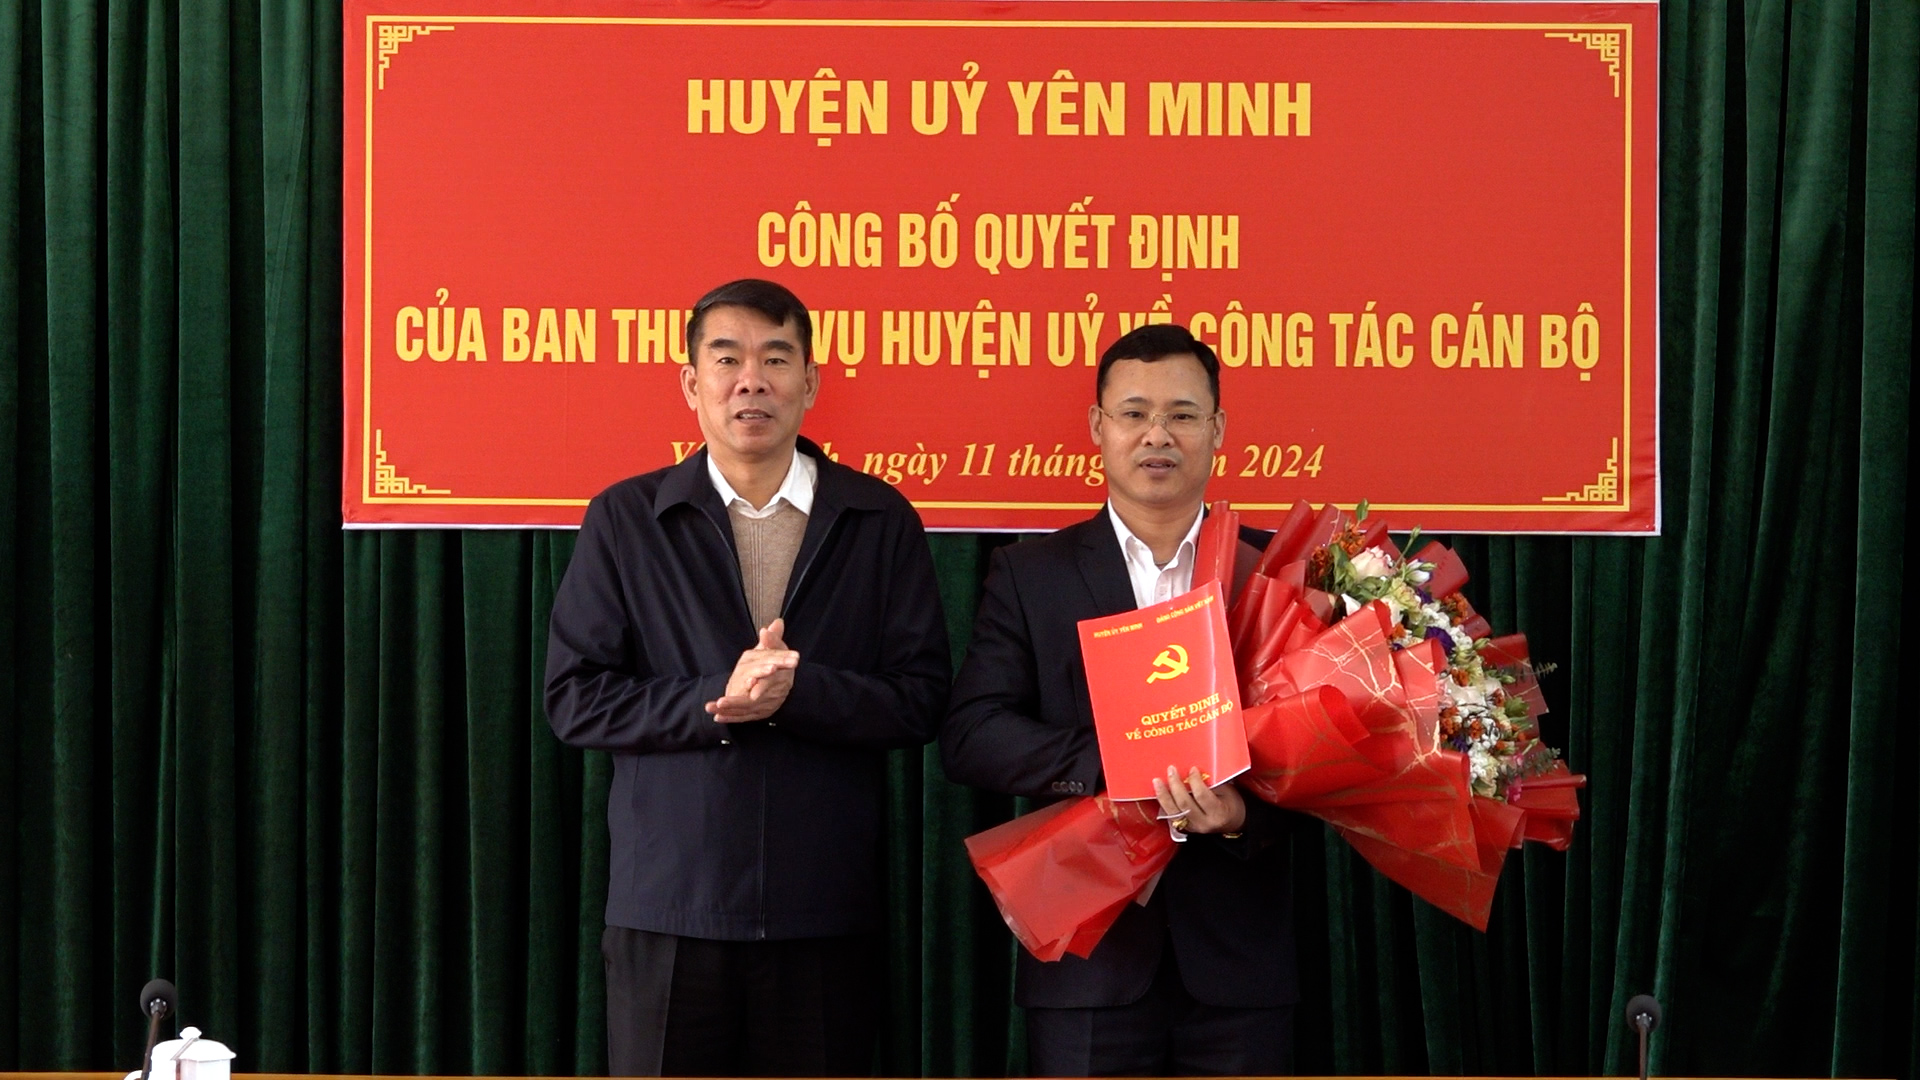 Huyện ủy Yên Minh công bố quyết định về công tác cán bộ